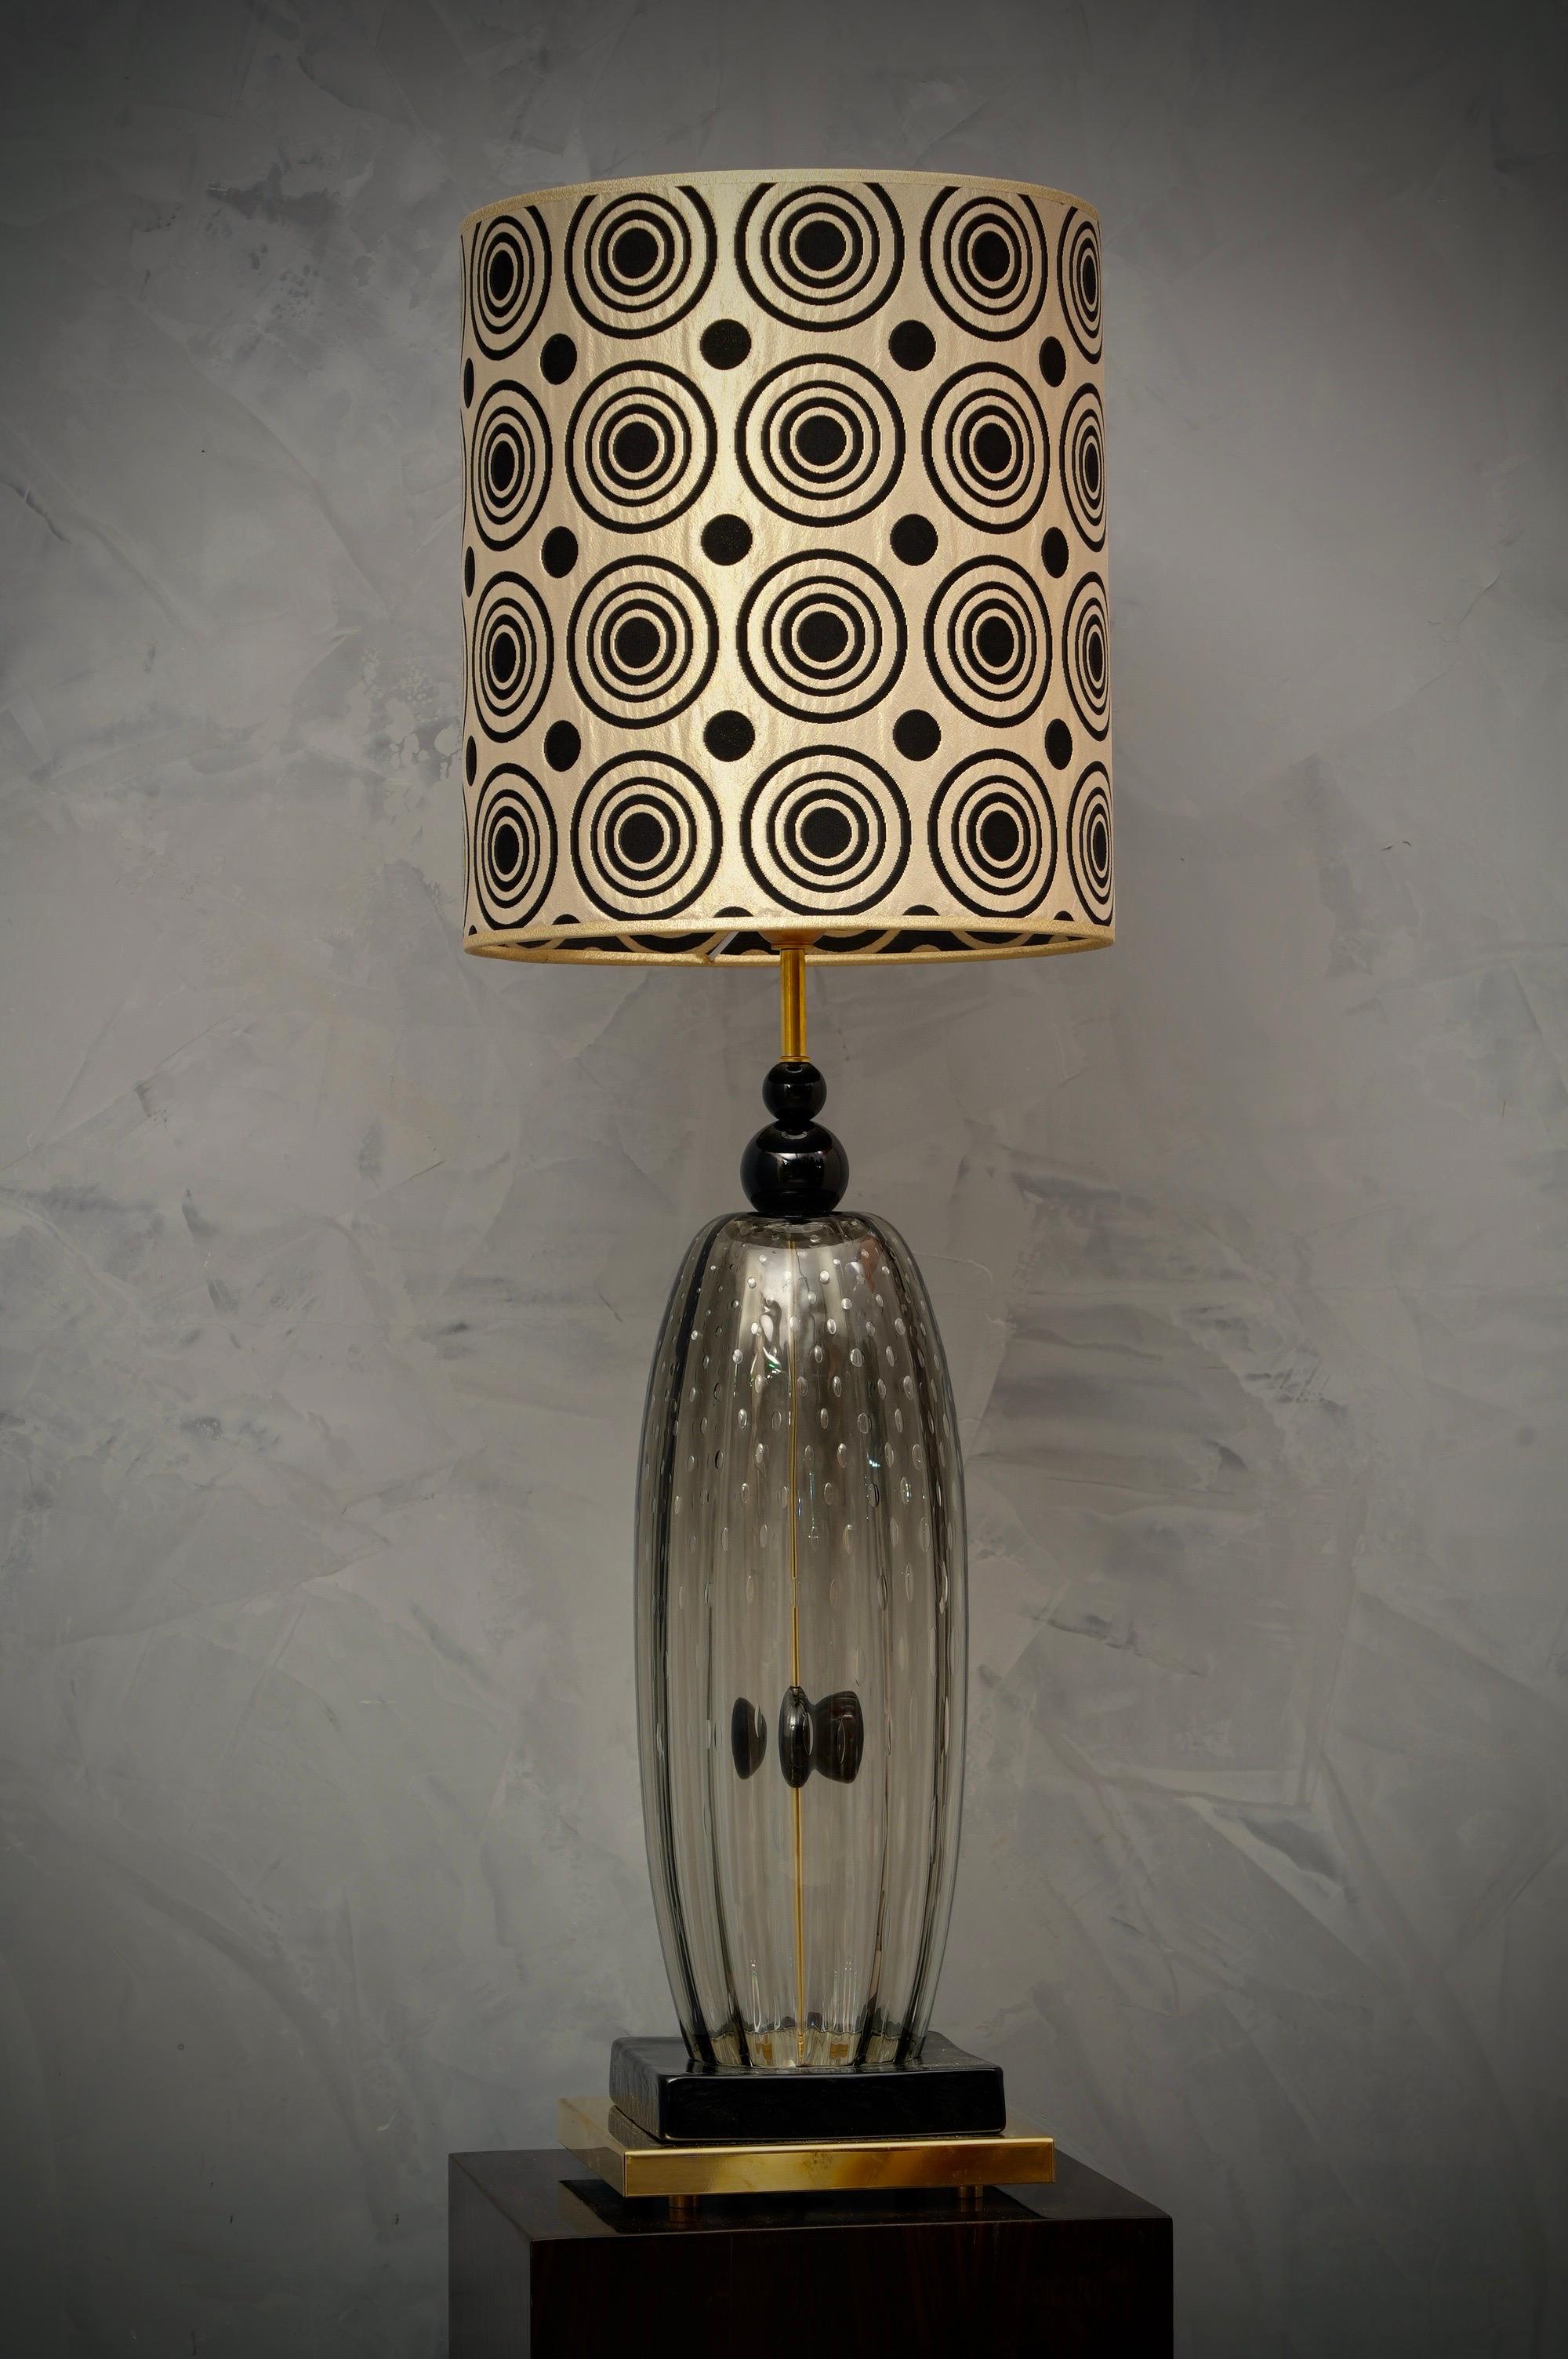 Incroyable beauté pour une lampe de table en verre de Murano du milieu du siècle.  Les fours Murano créent un design intemporel incontestable, à la fois simple et élégant.

Le tout en verre soufflé de Murano, de couleur noire et transparente. Formée